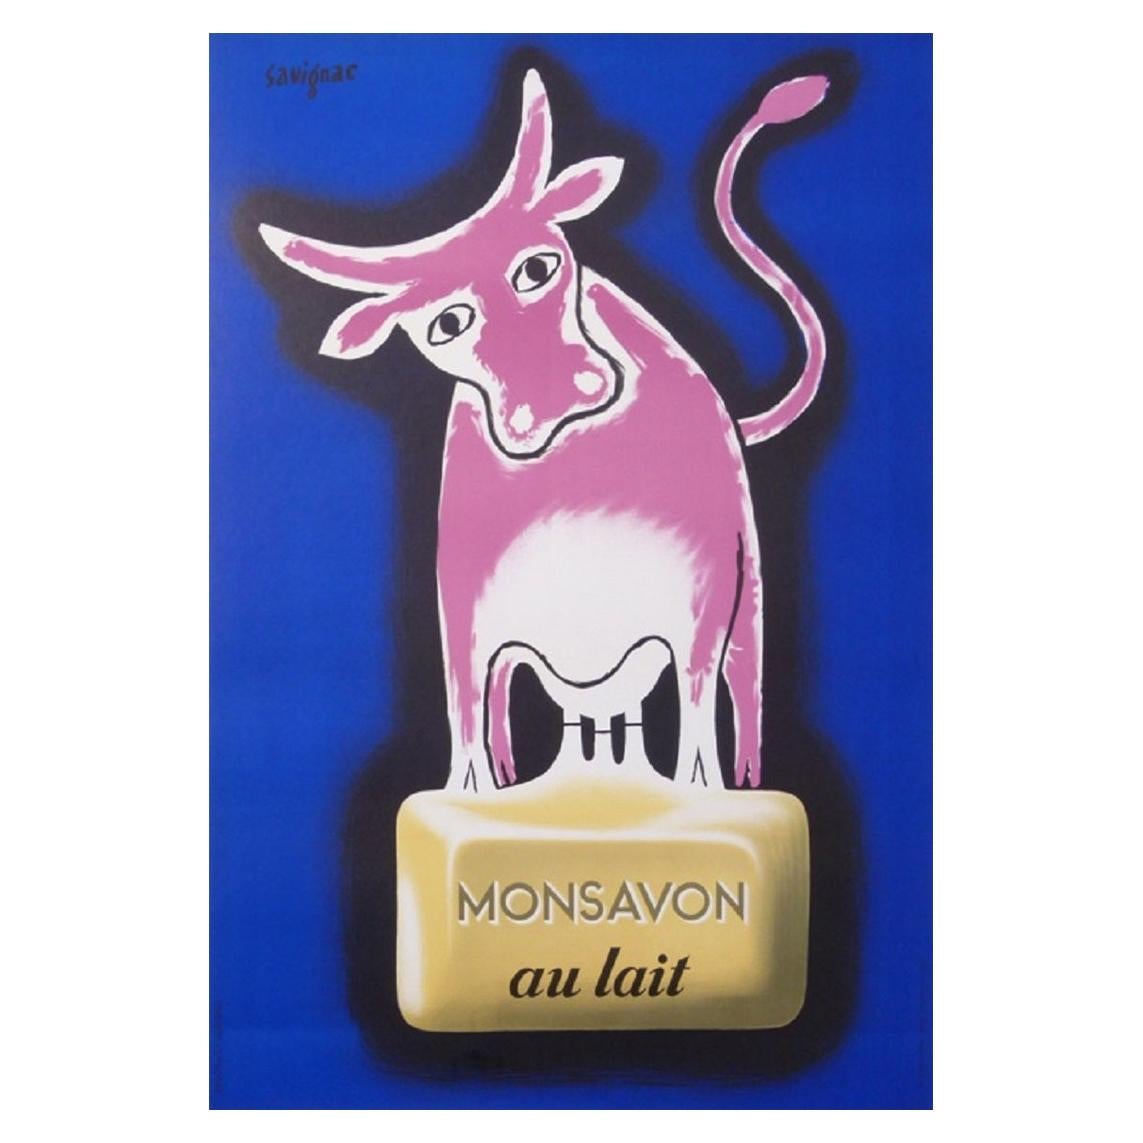 Savignac Monsavon au lait Original Vintage Poster